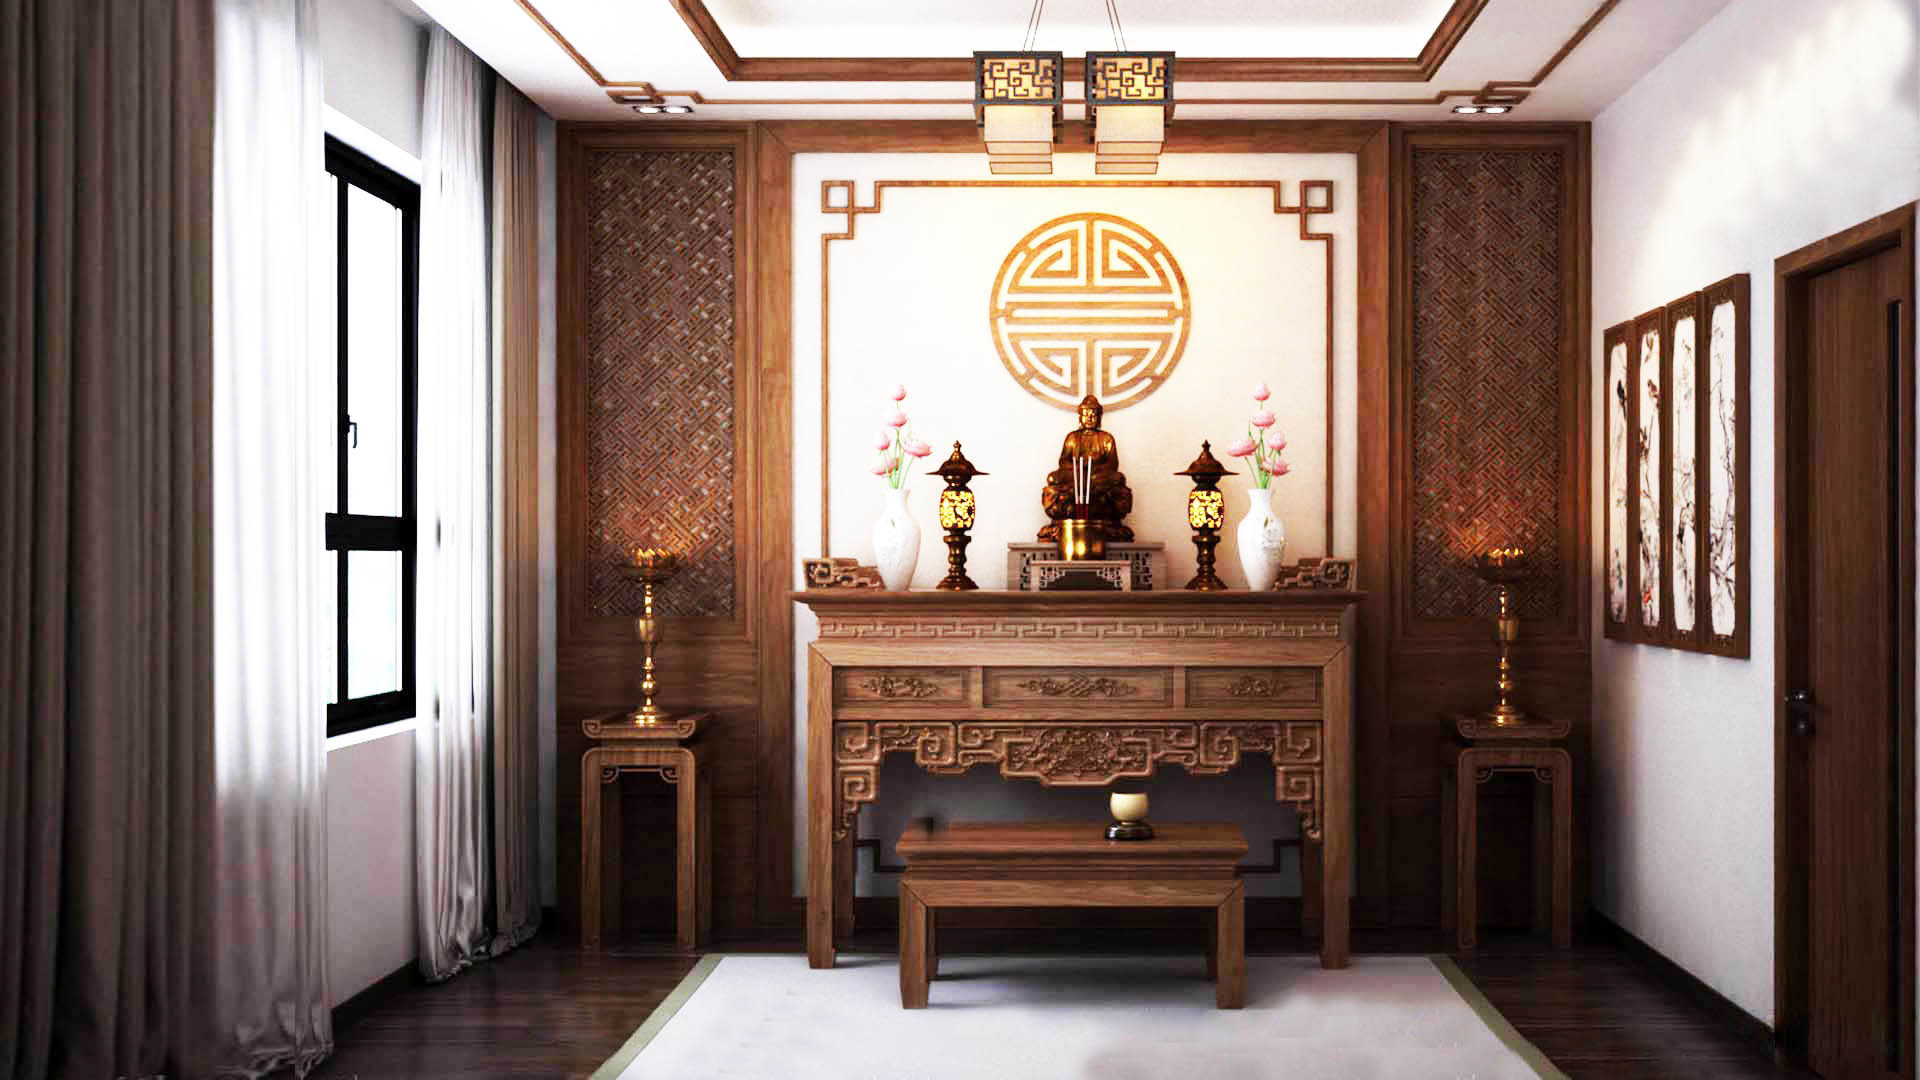 Thiết kế bàn thờ Phật trong nhà hợp phong thủy để cả nhà luôn gặp may mắn,  bình an